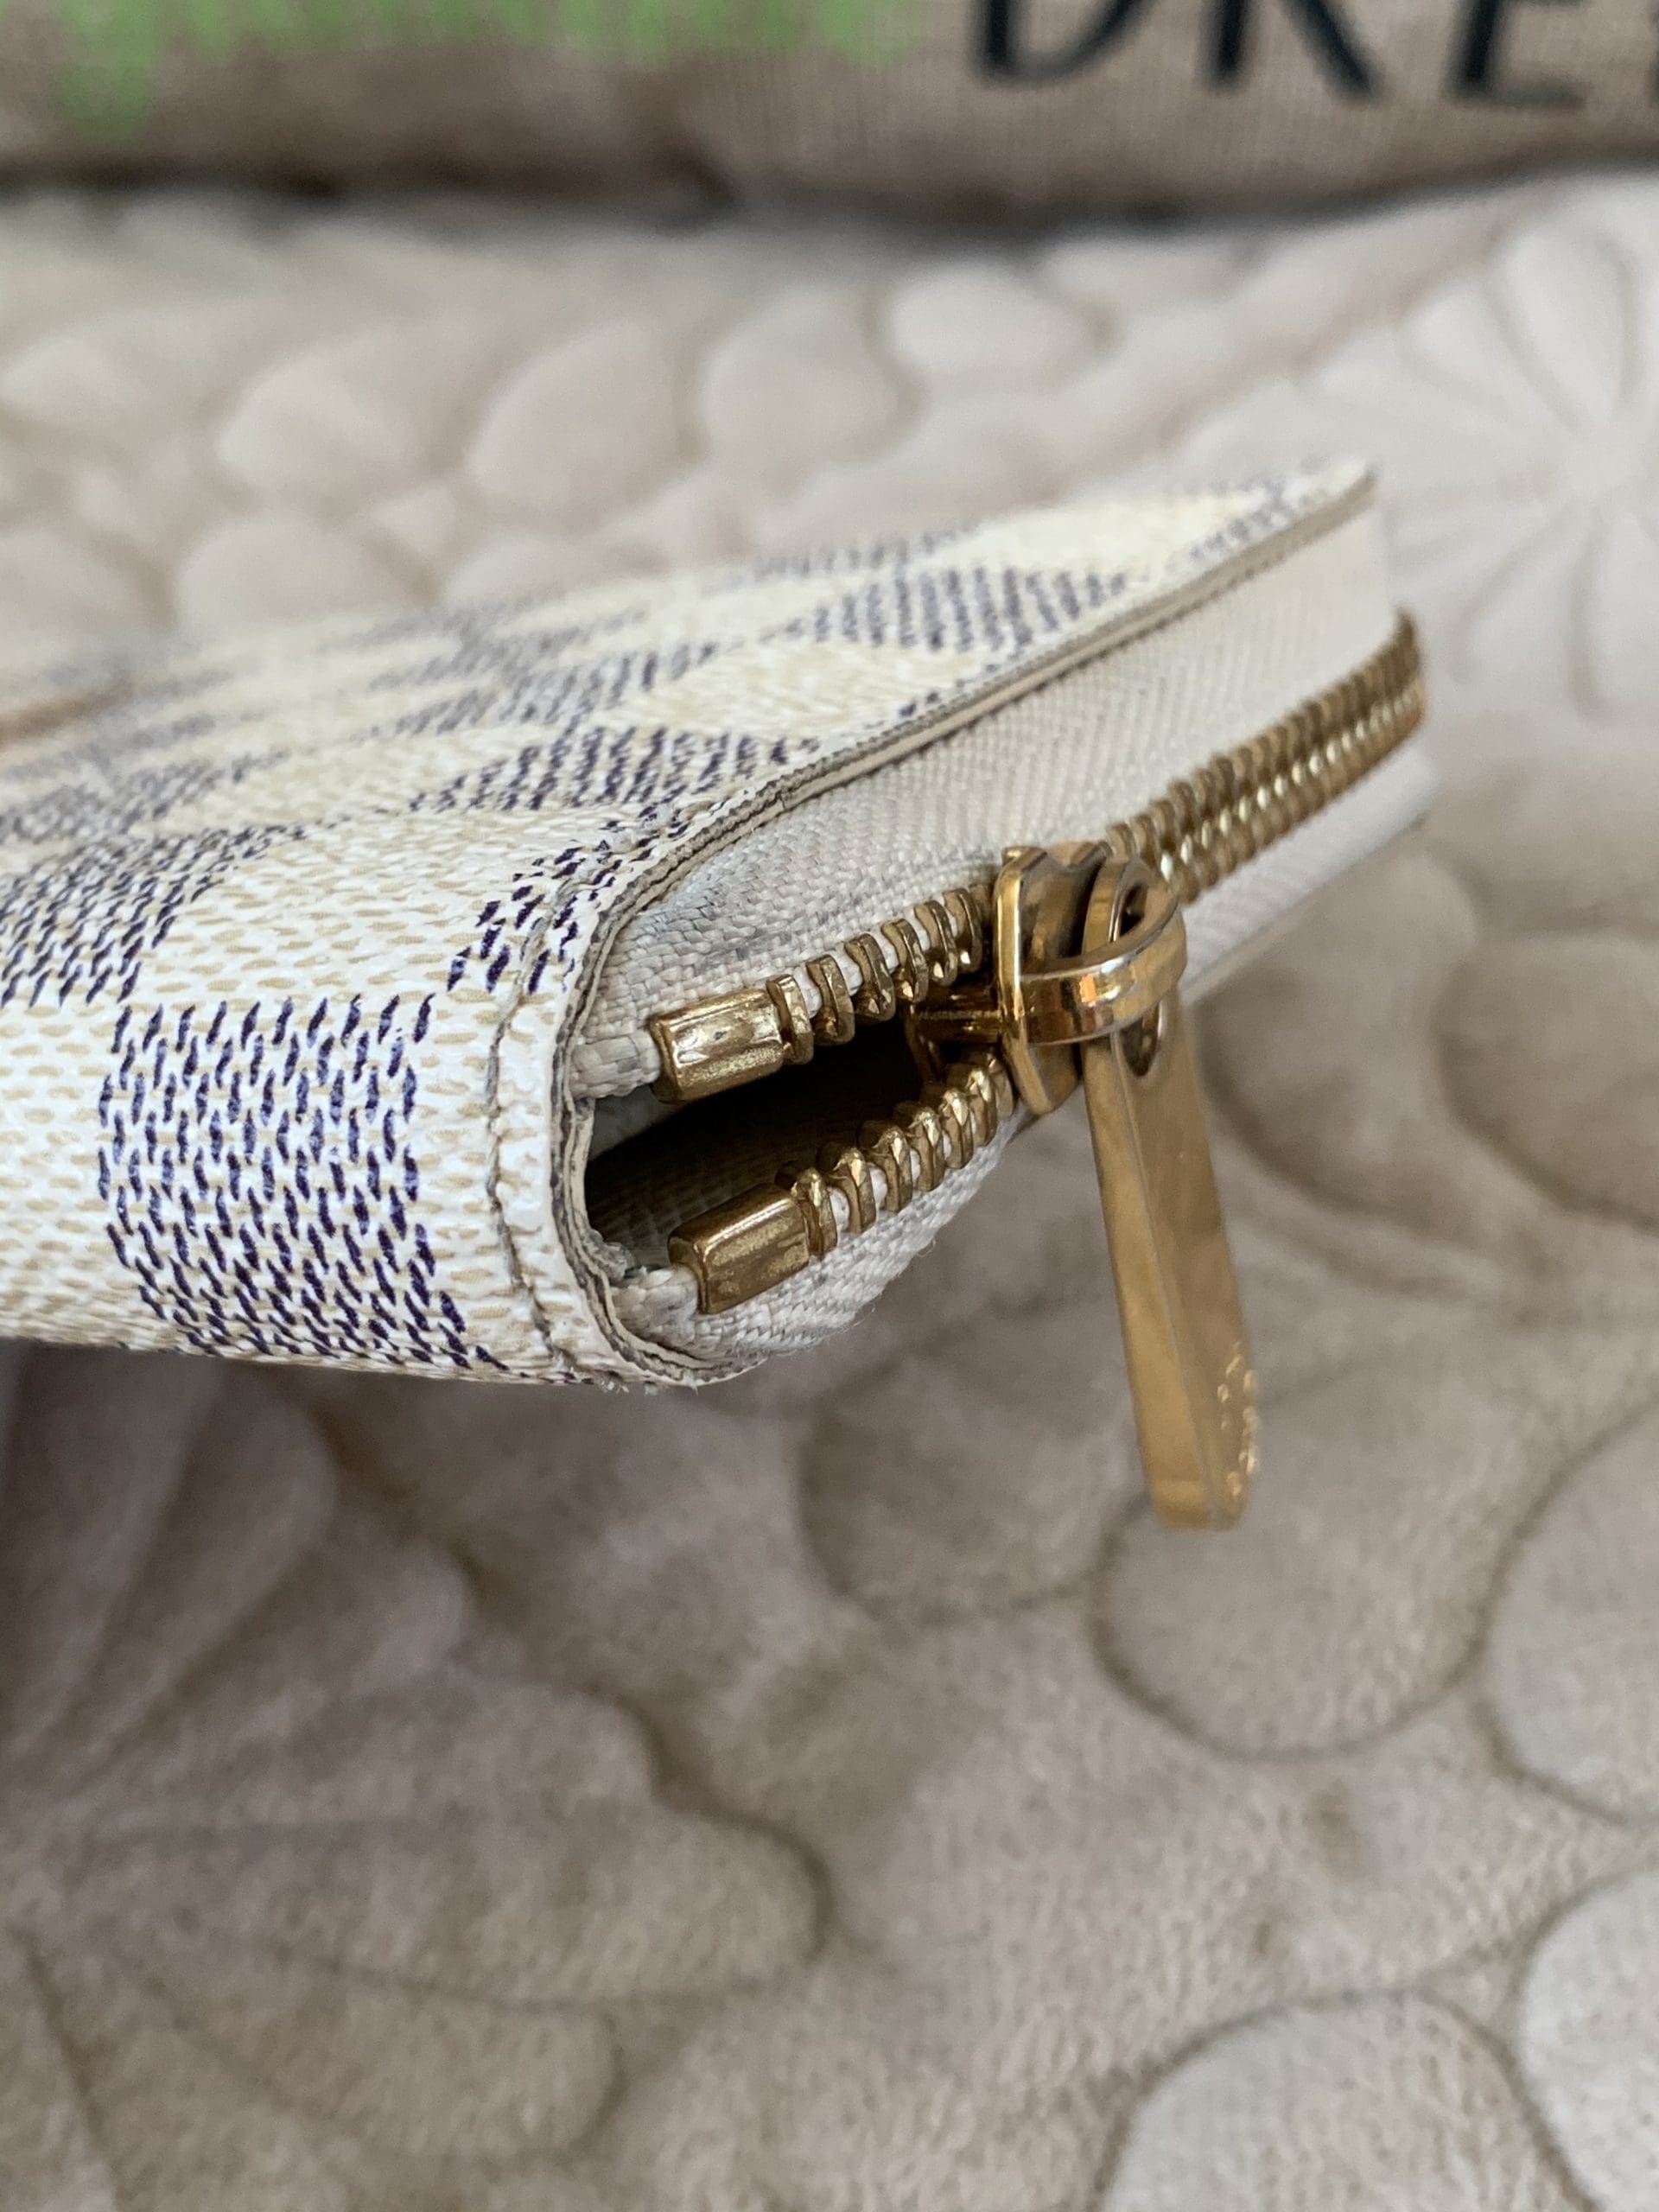 Louis Vuitton Damier Azur Compact Zippy Wallet – The Stock Room NJ